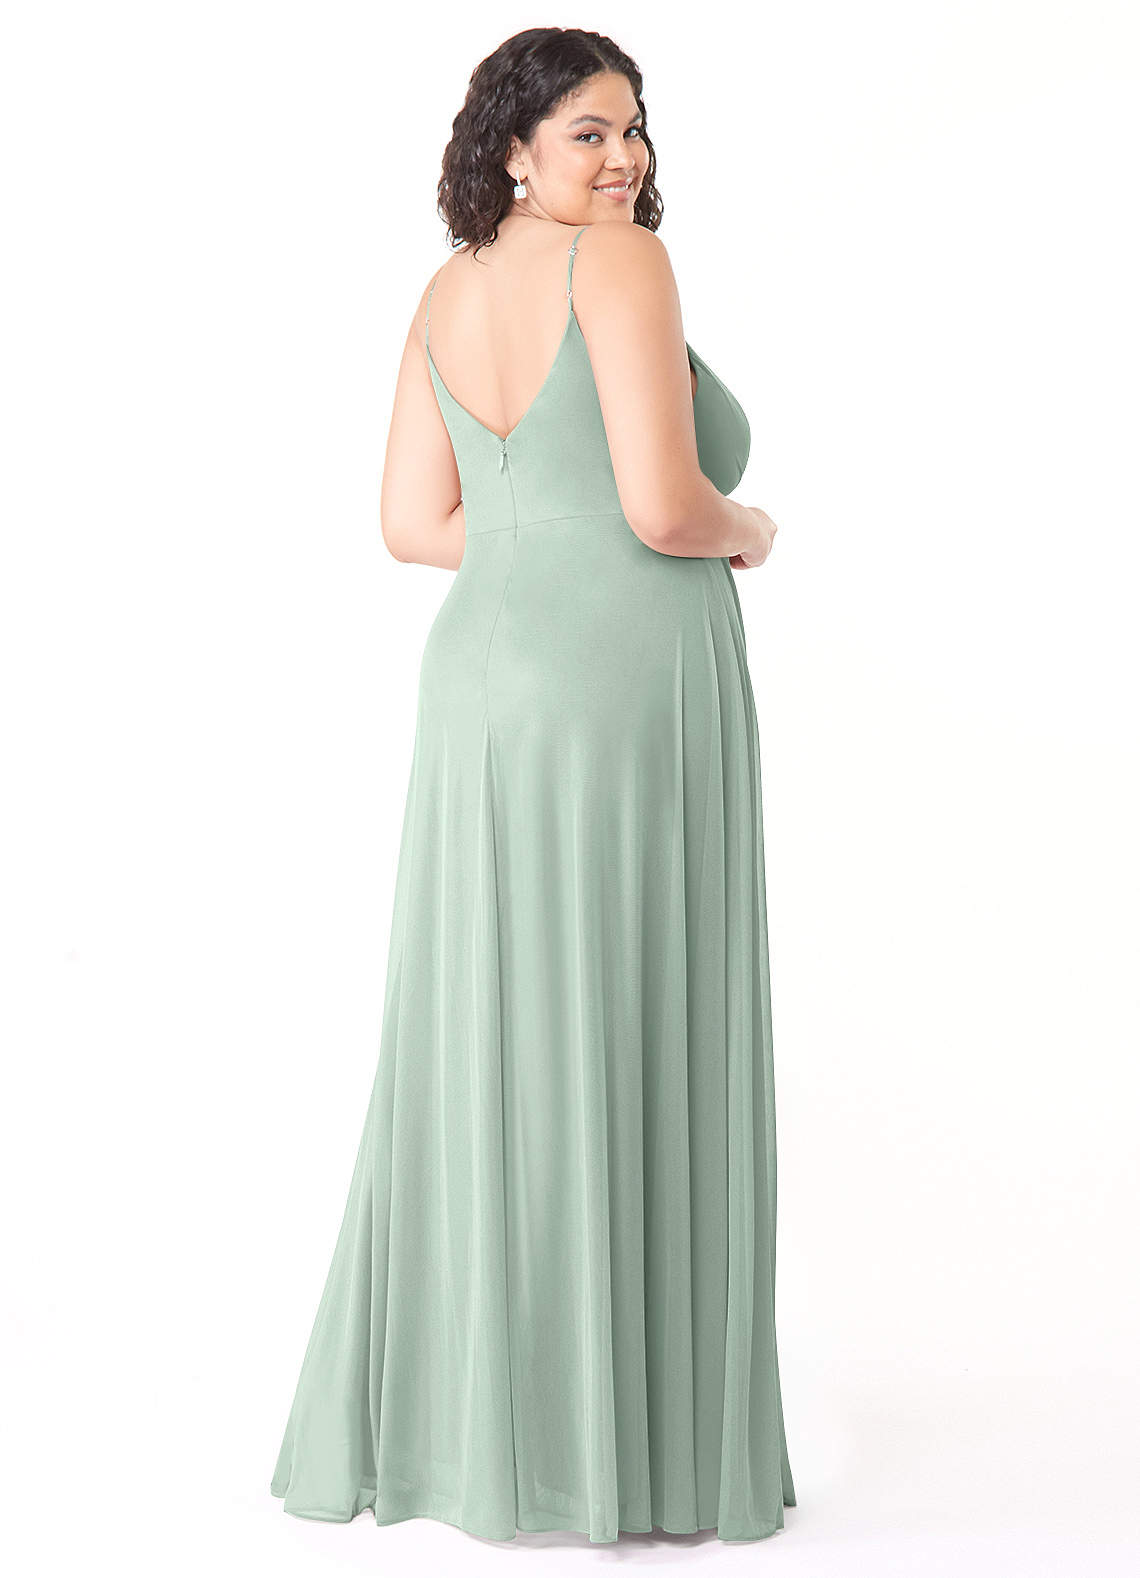 Azazie Evalin Bridesmaid Dresses A-Line V-Neck Pleated Mesh Floor-Length Dress image1